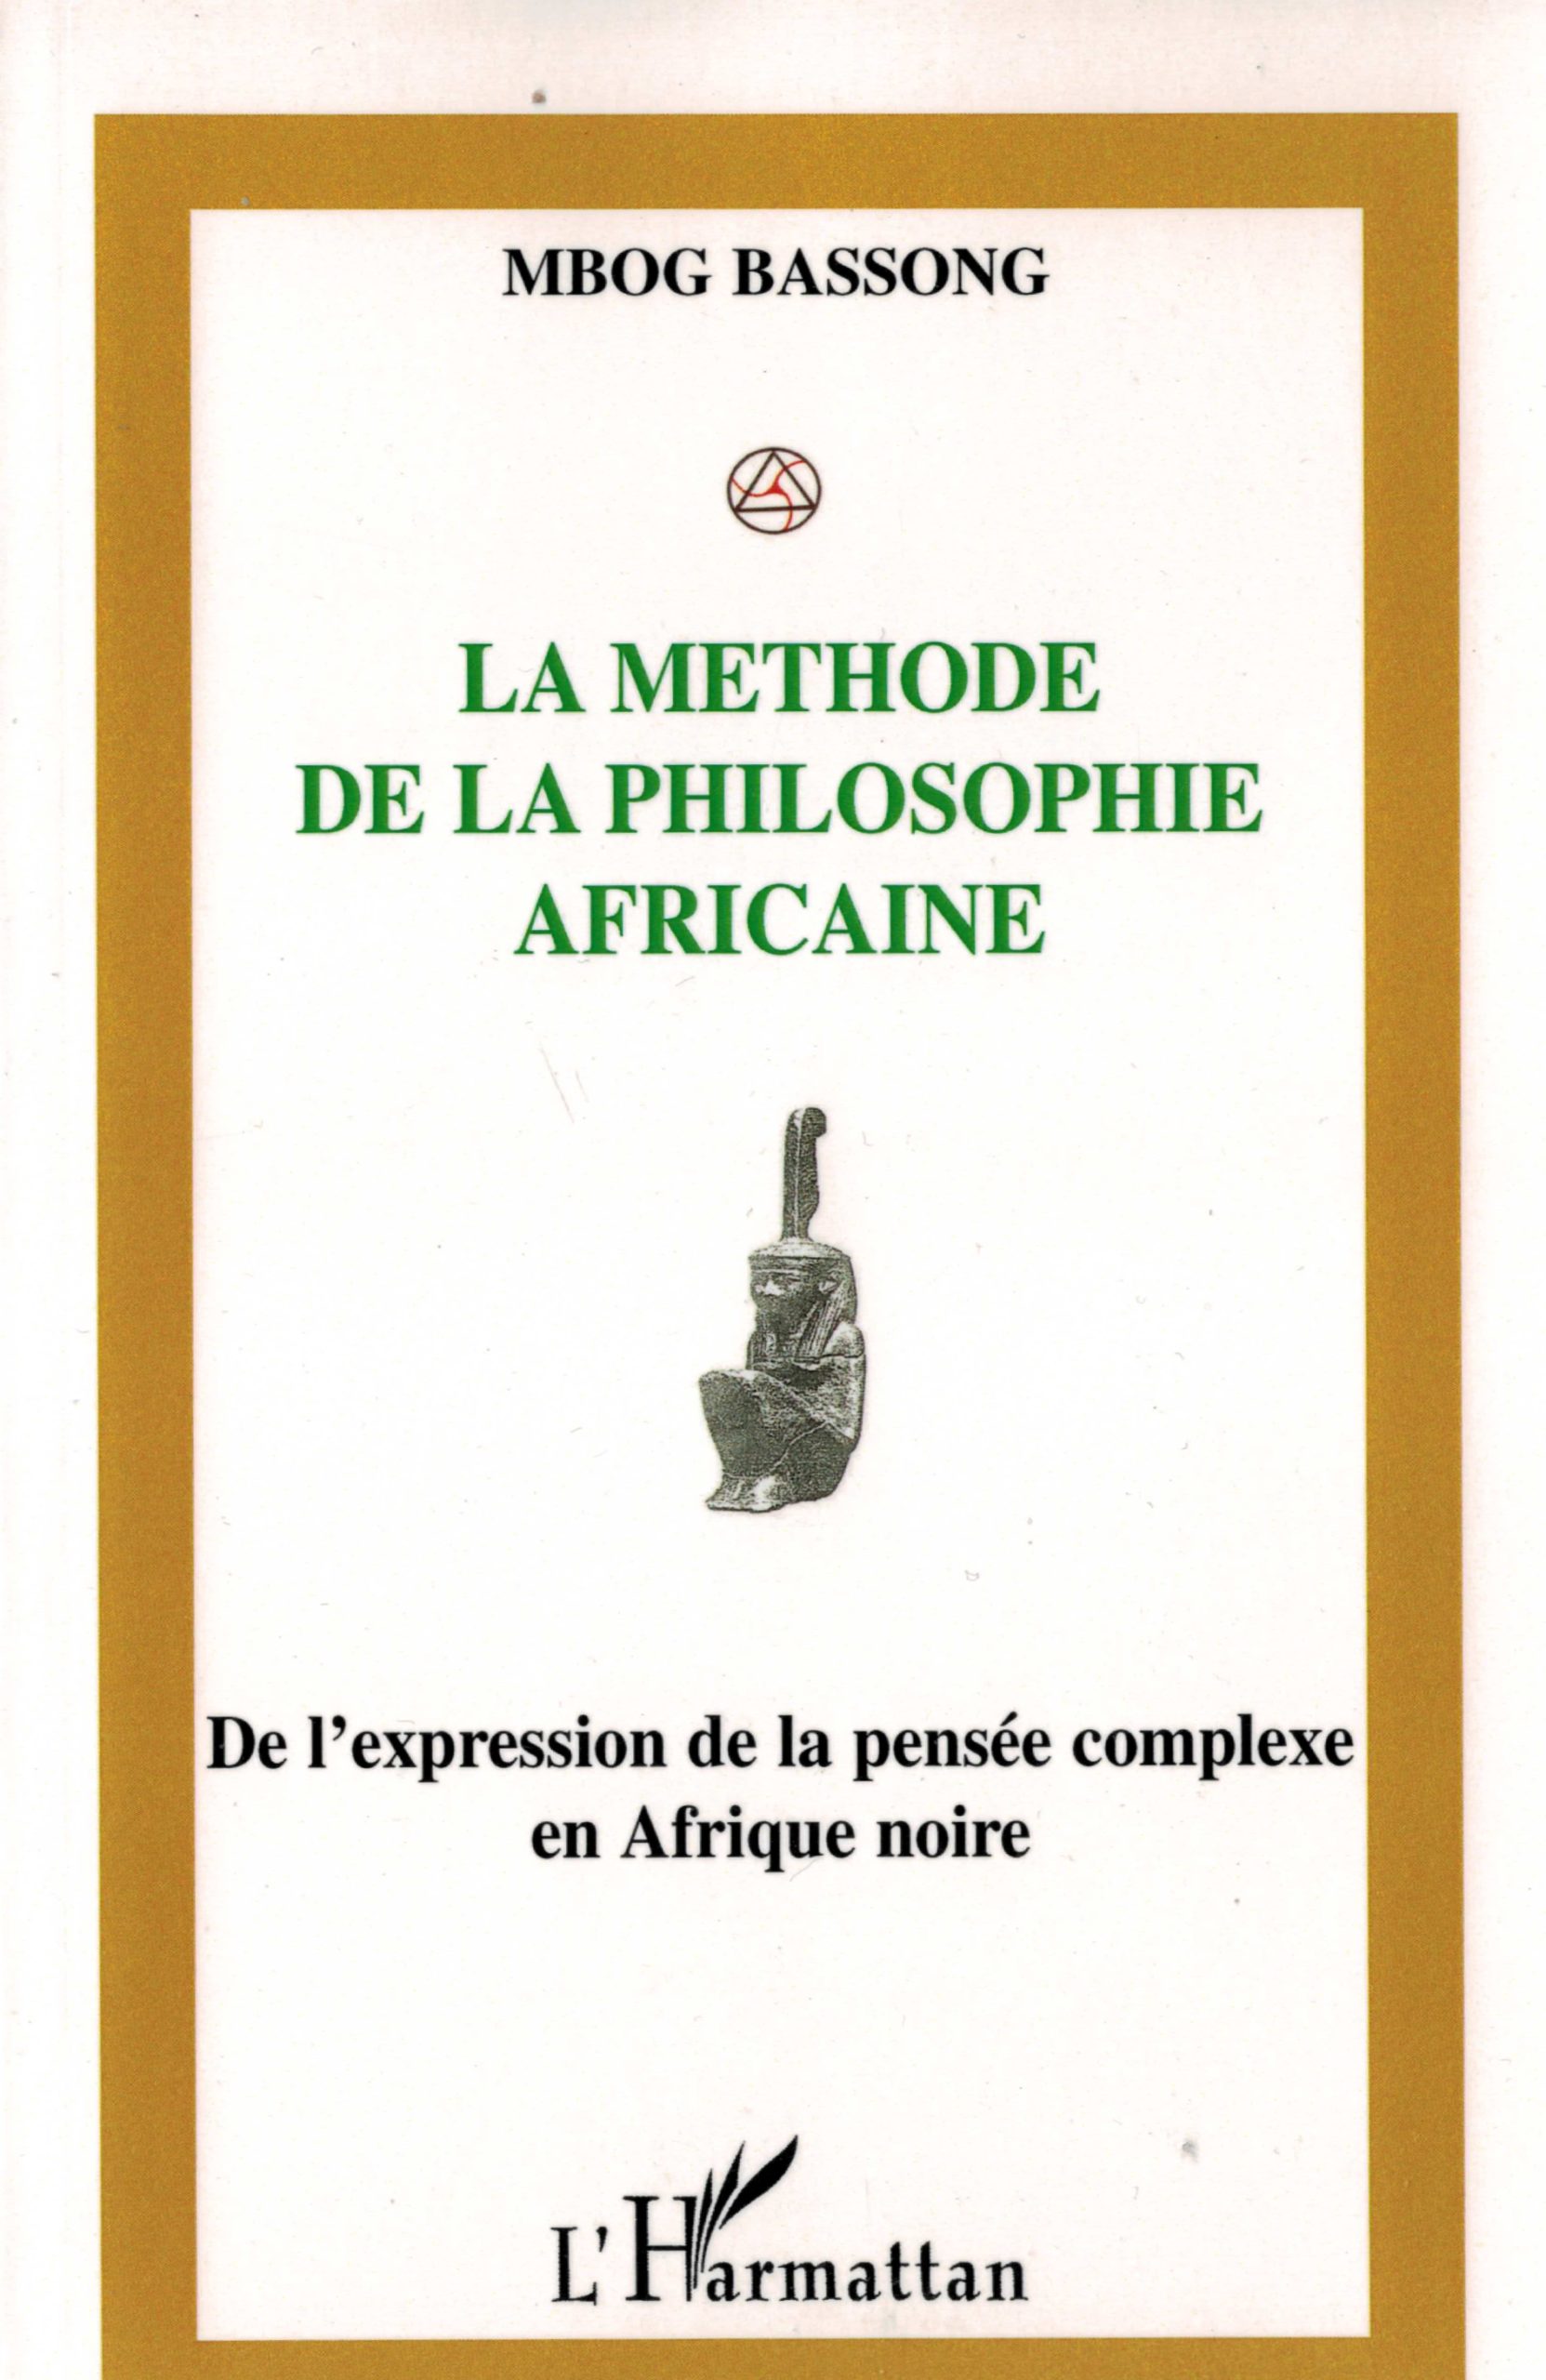 dissertation sur la philosophie africaine introduction